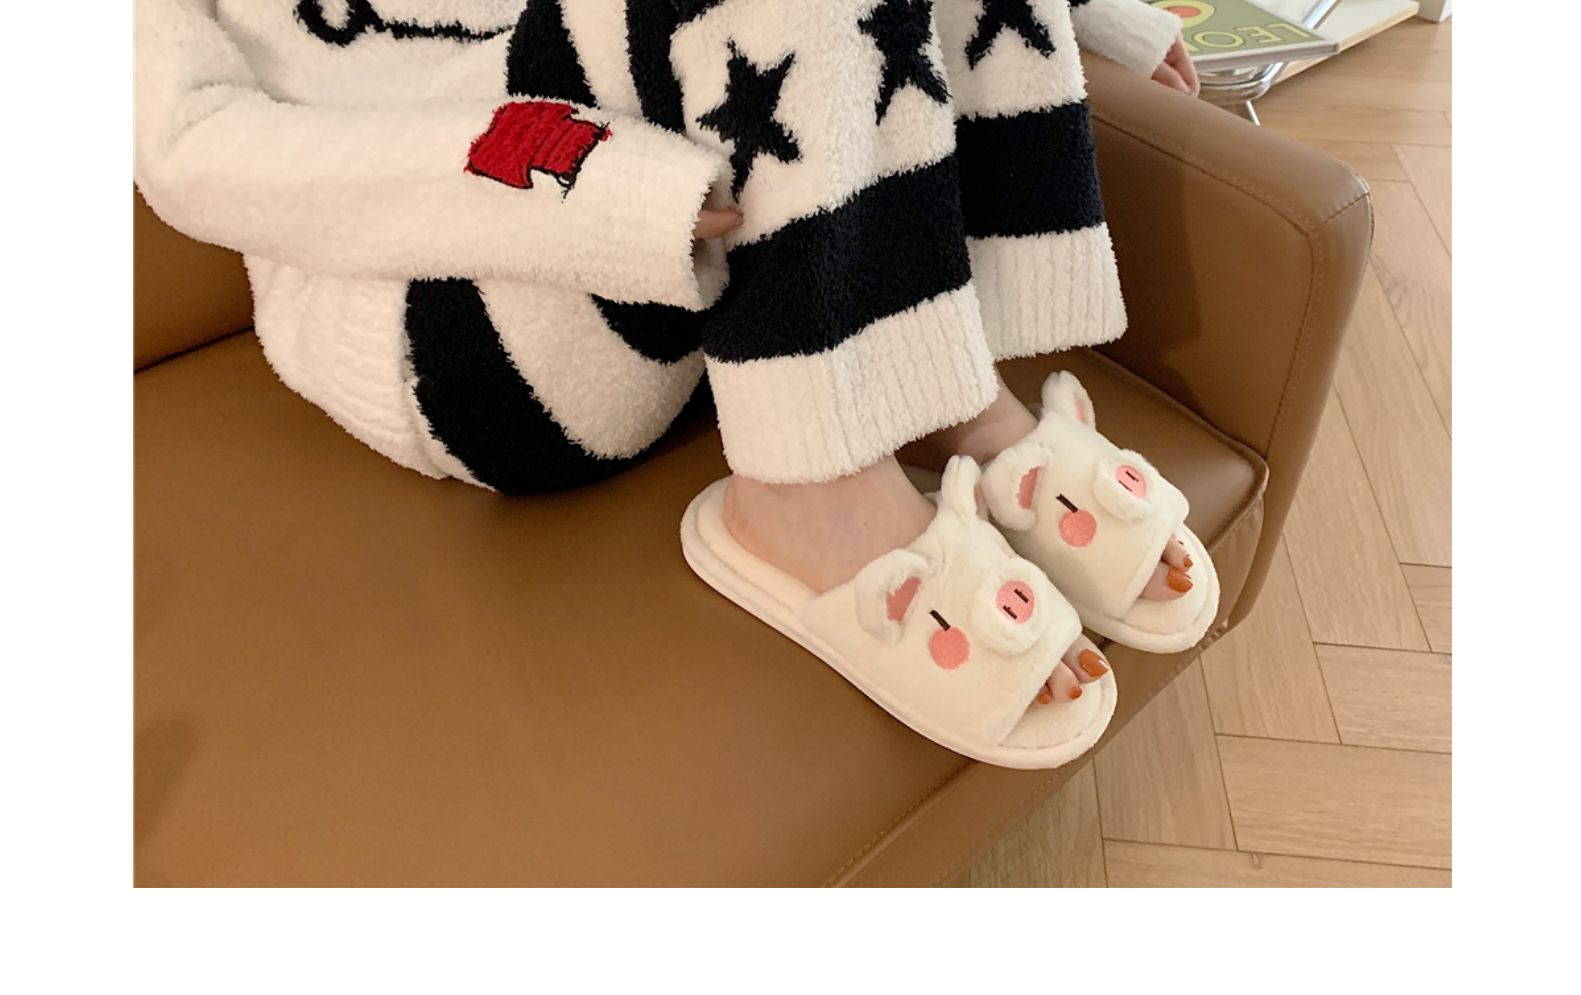 【免運】韓版居家室內防滑月子保暖棉拖鞋冬季可愛卡通一字家用棉拖鞋女 BBJH159338